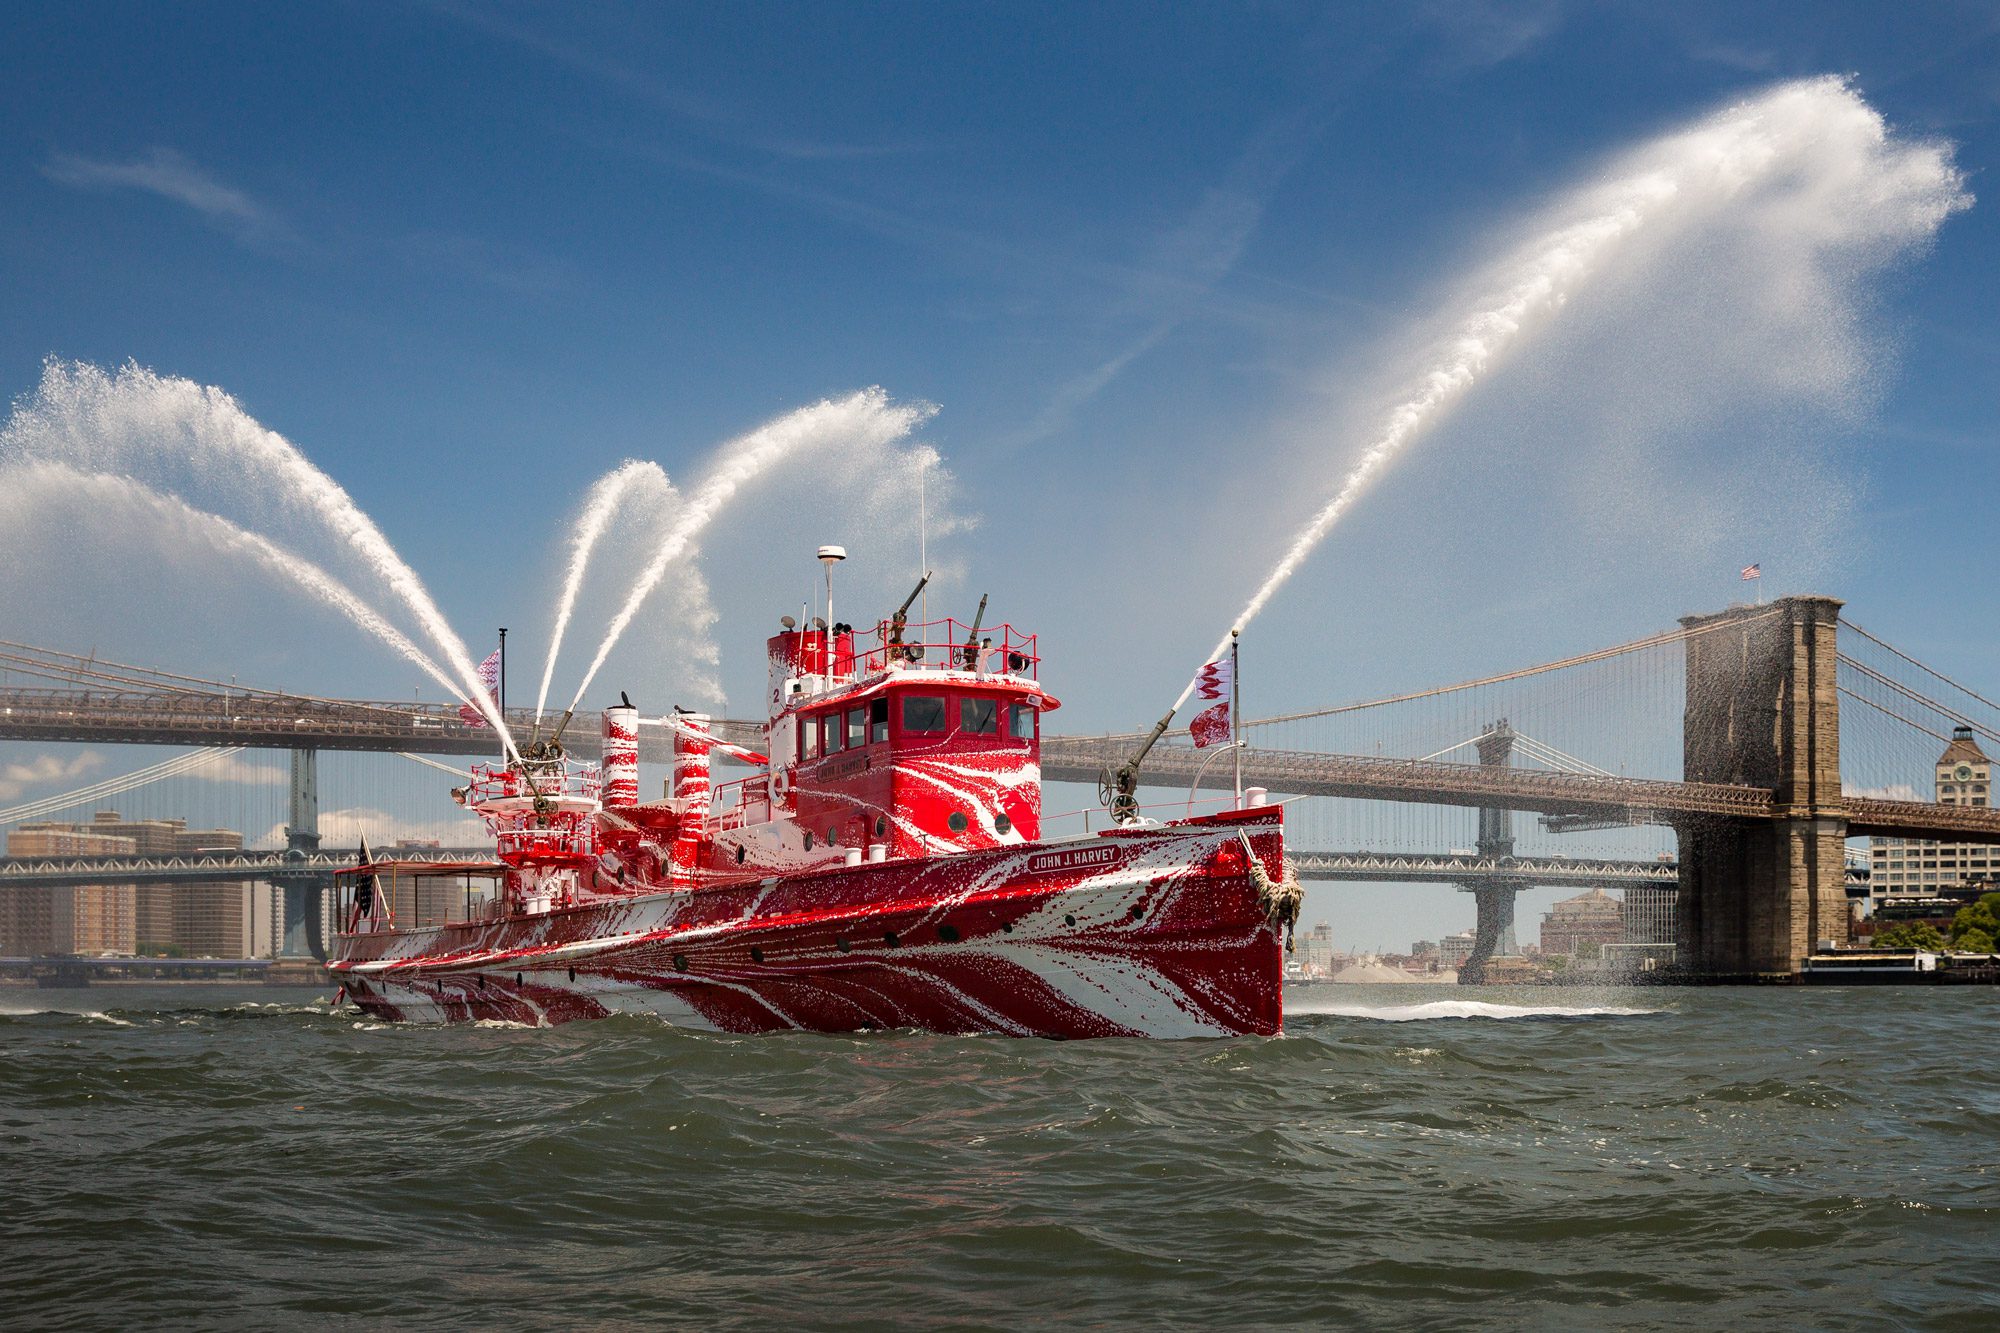 Ship Photos: Historic NYC Fireboat John J Harvey Gets Dazzled